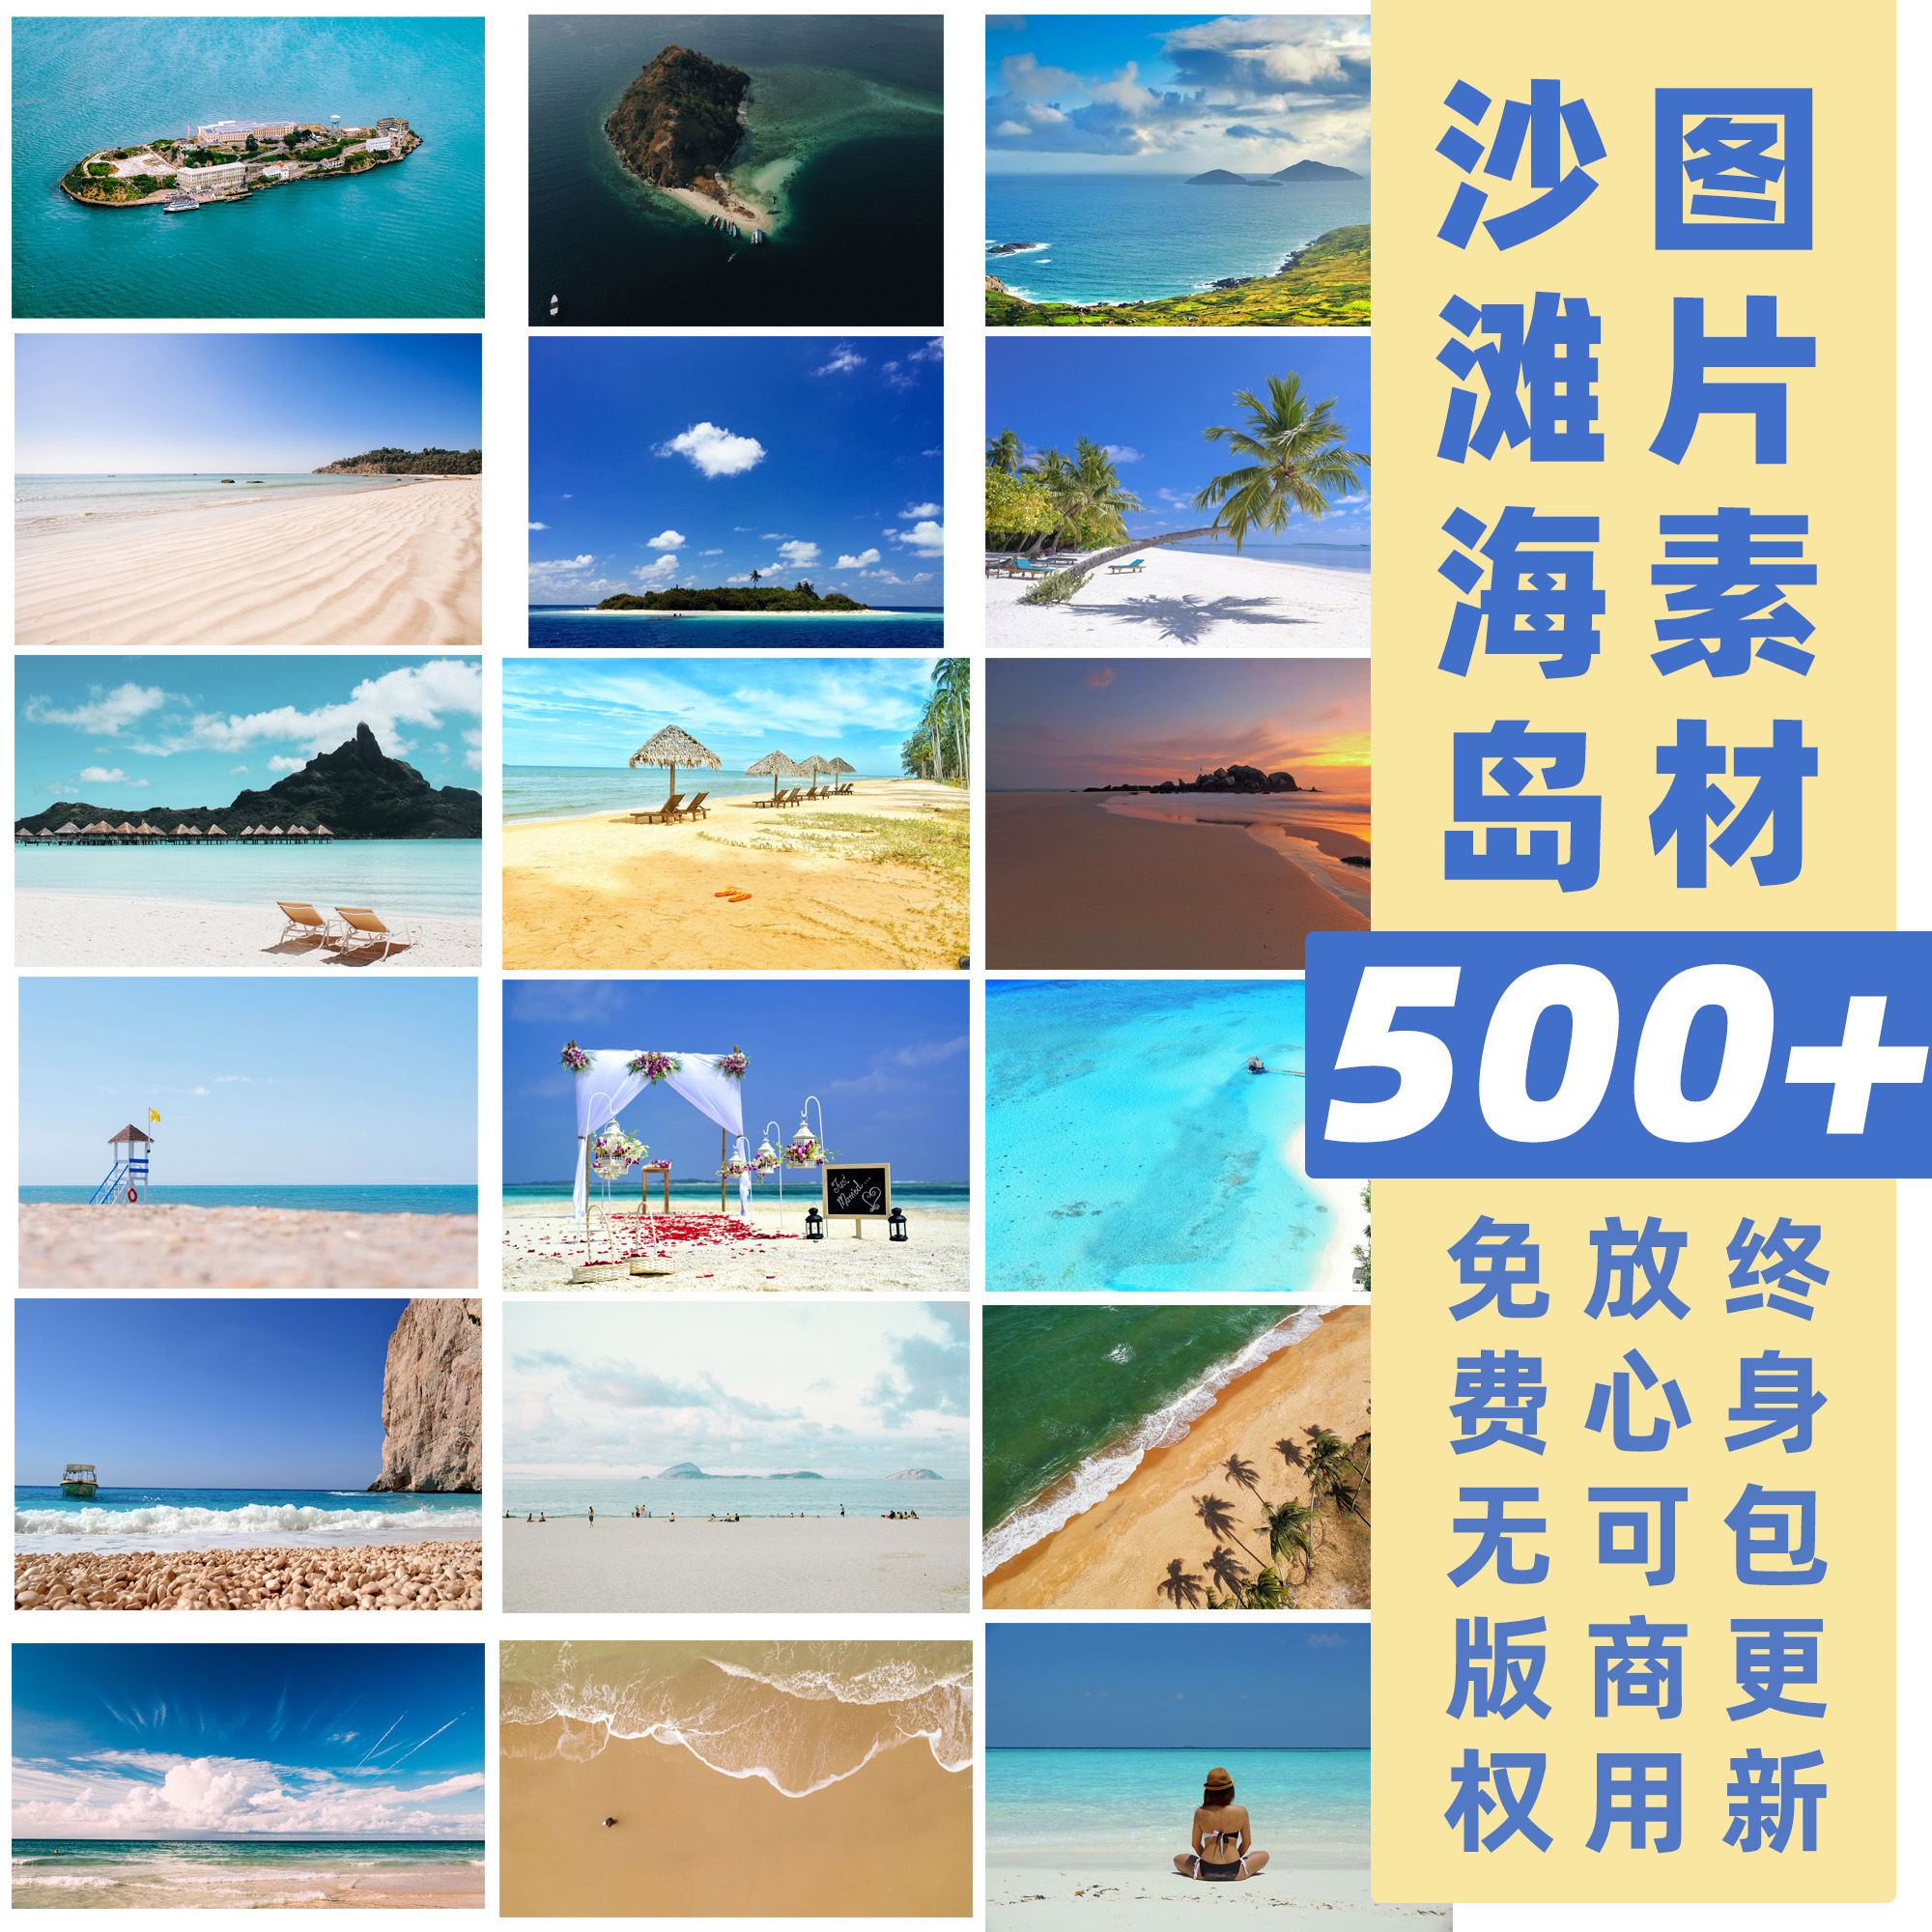 沙滩海岛丨免费可商用图片素材高清自然景观图设计师图库CCO协议